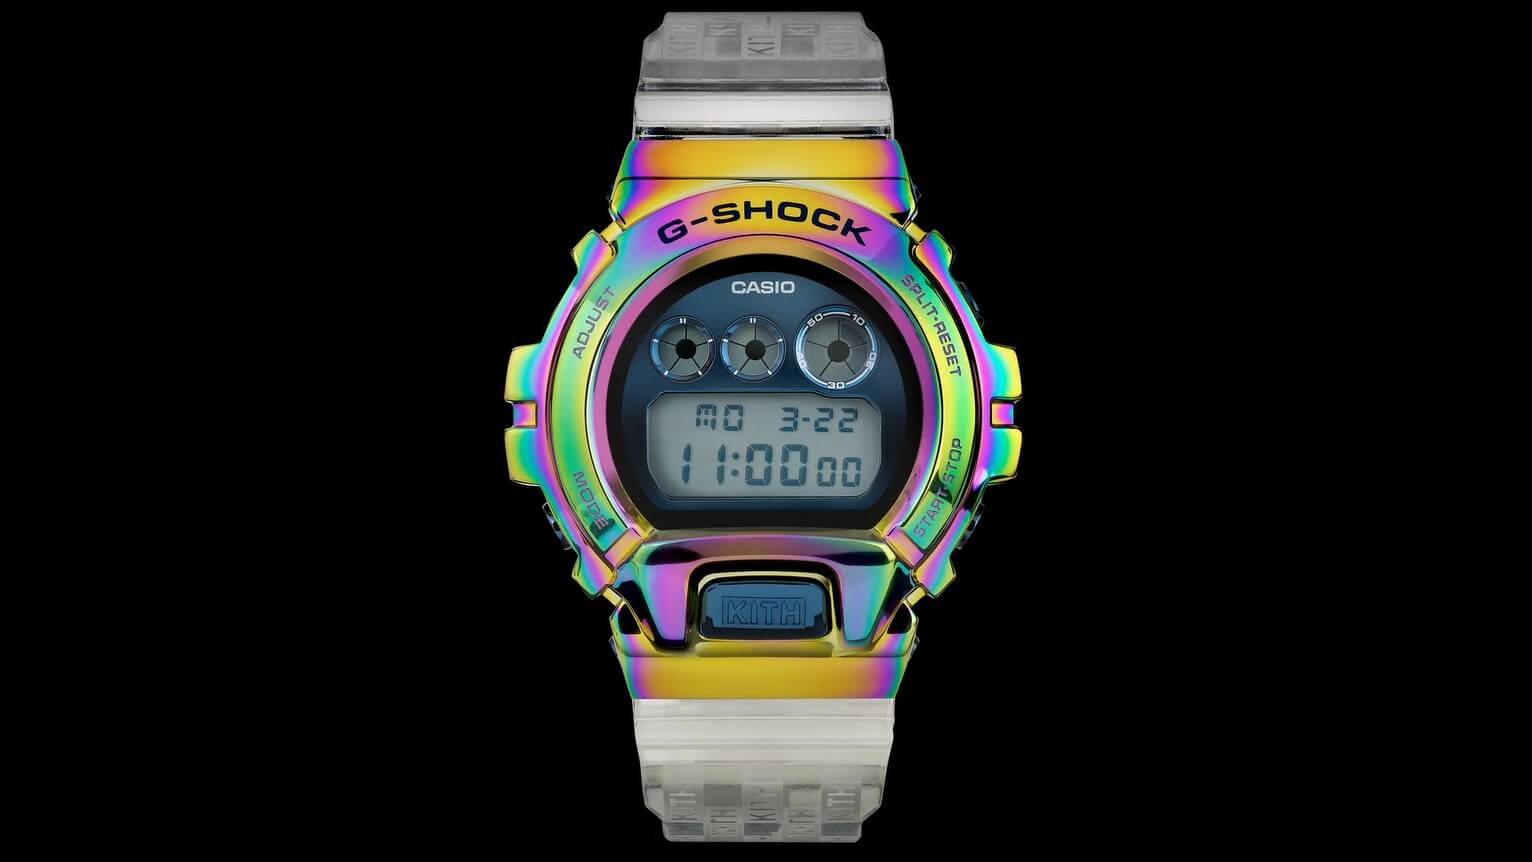 The Kith u0026 G-Shock GM-6900 Rainbow Edition Is A Technicolour Beast